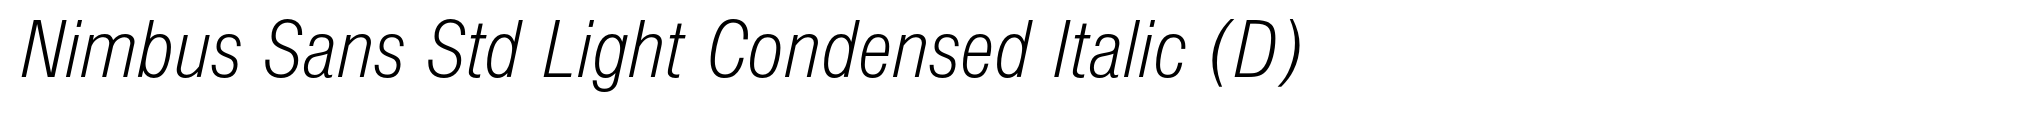 Nimbus Sans Std Light Condensed Italic (D) image